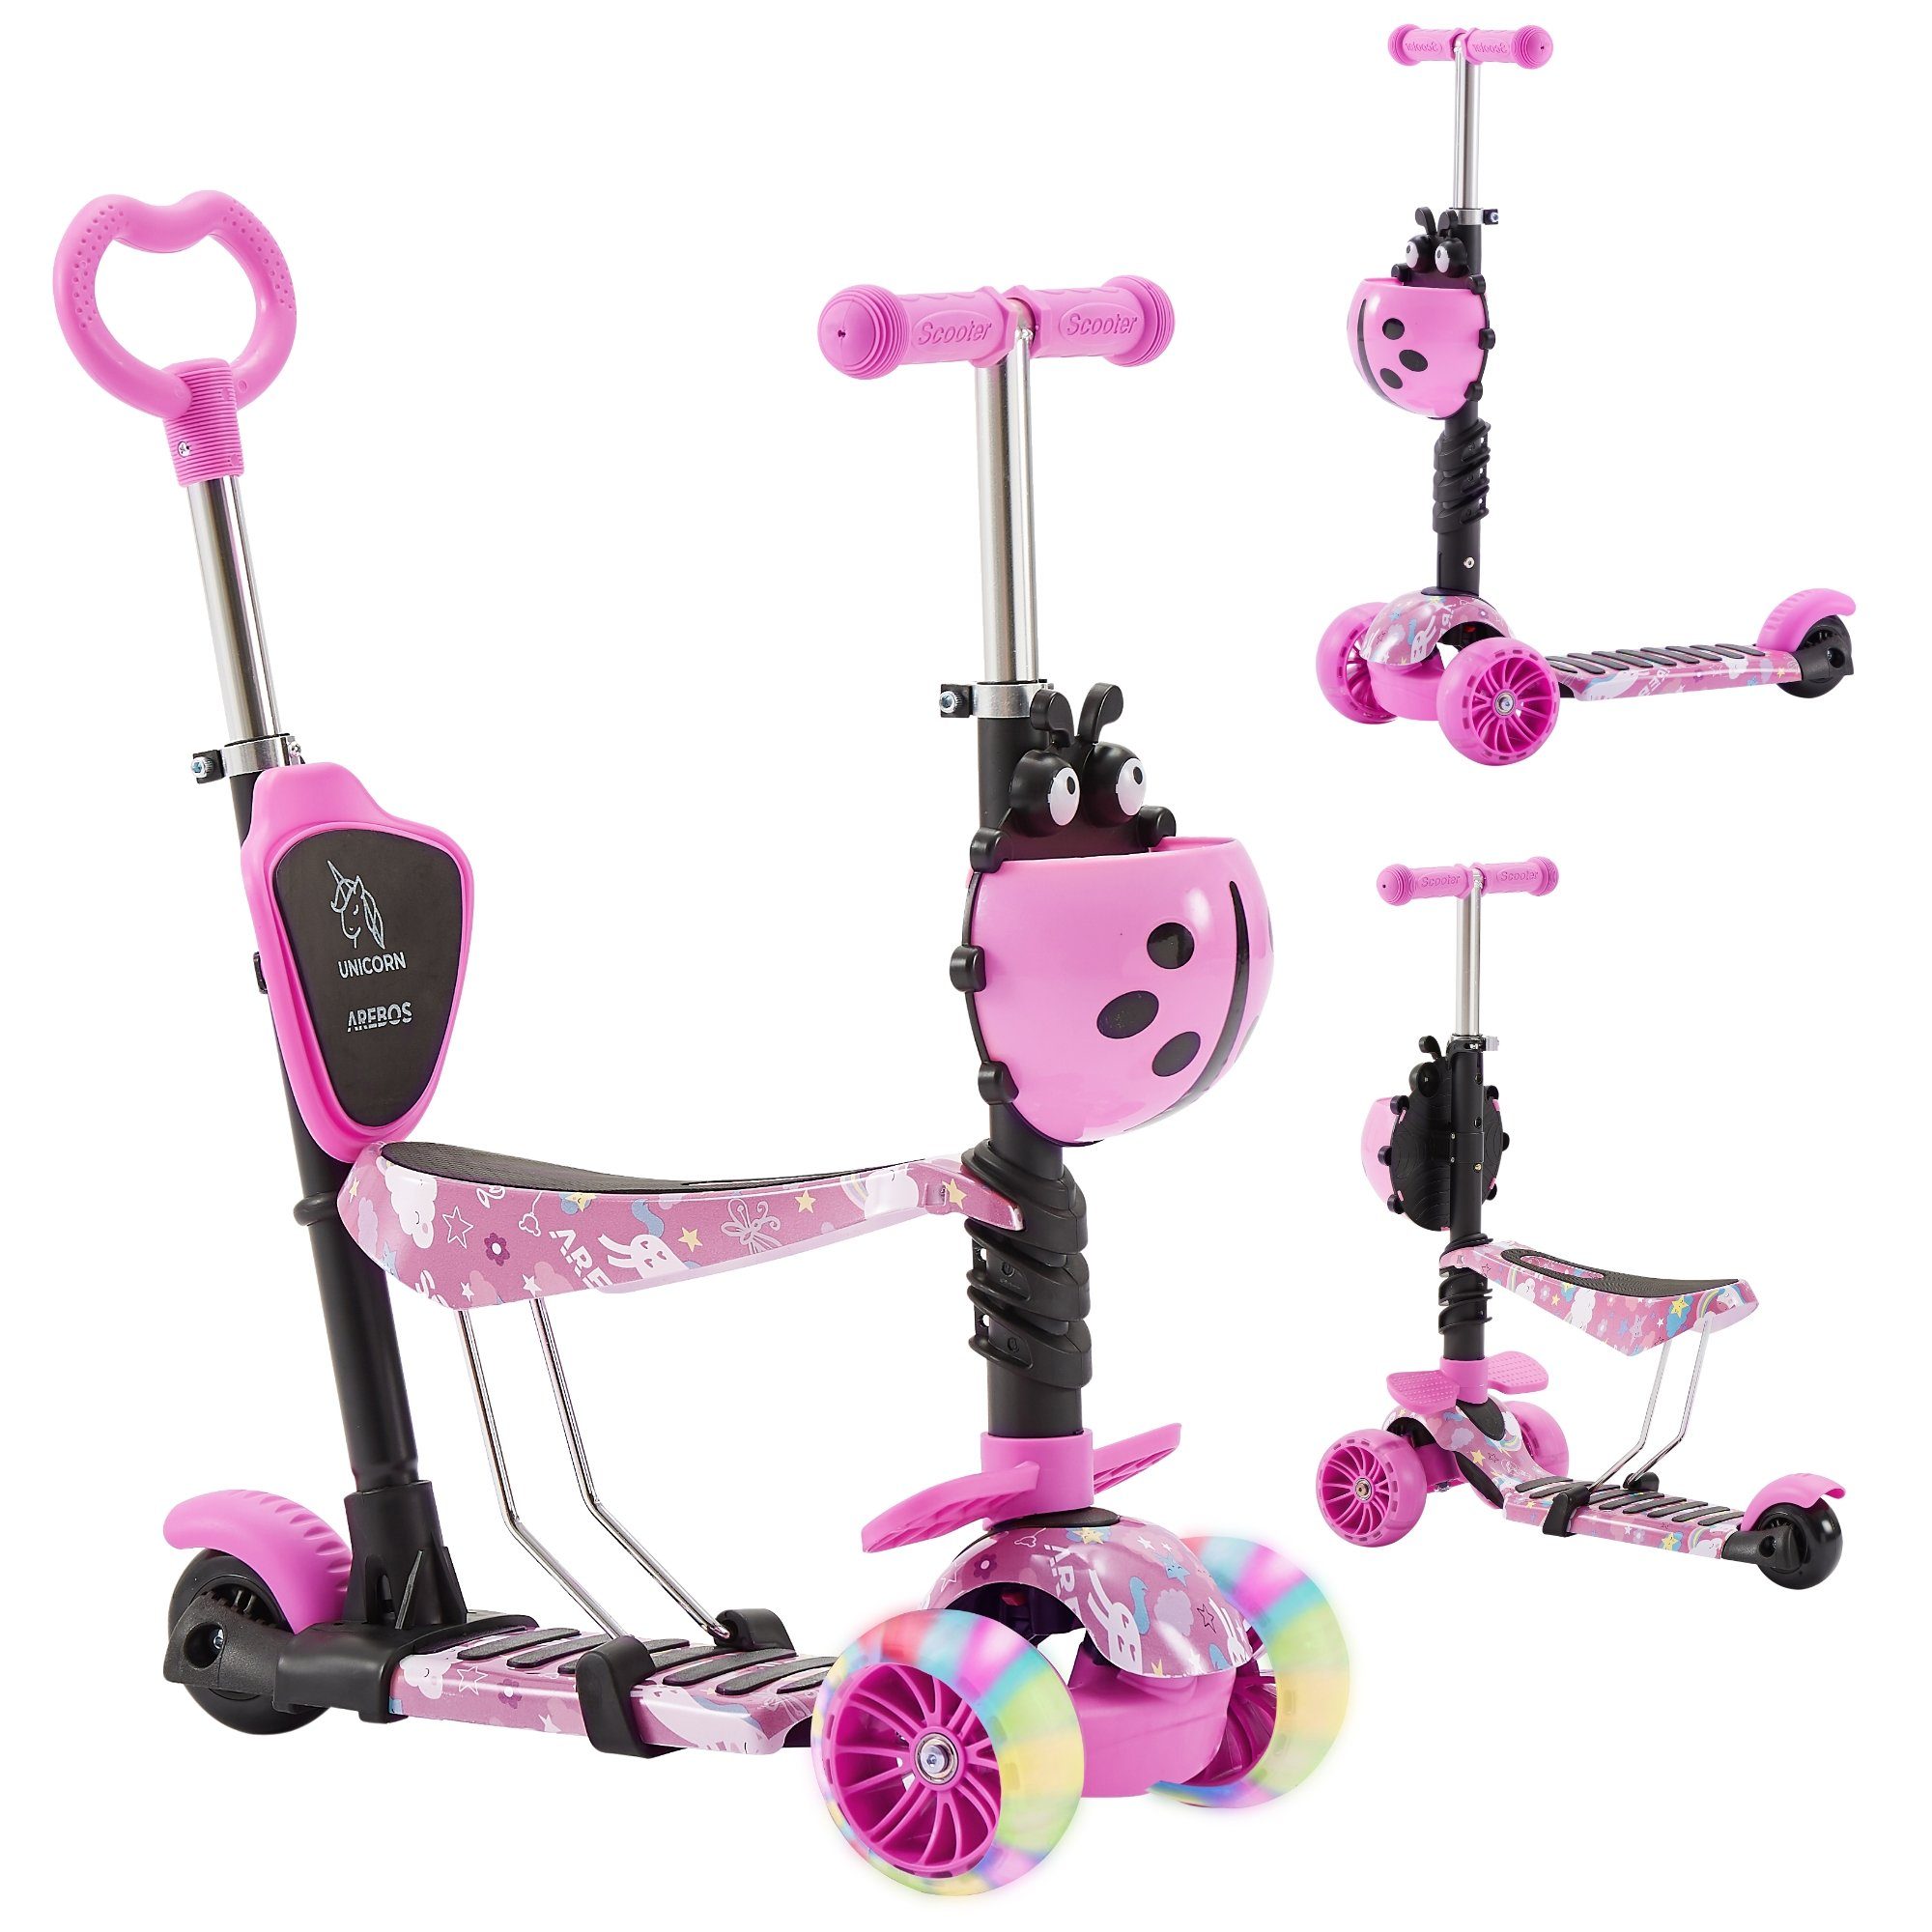 Scooter Kinder Cityroller, Pink Tretroller, LED-Räder Arebos